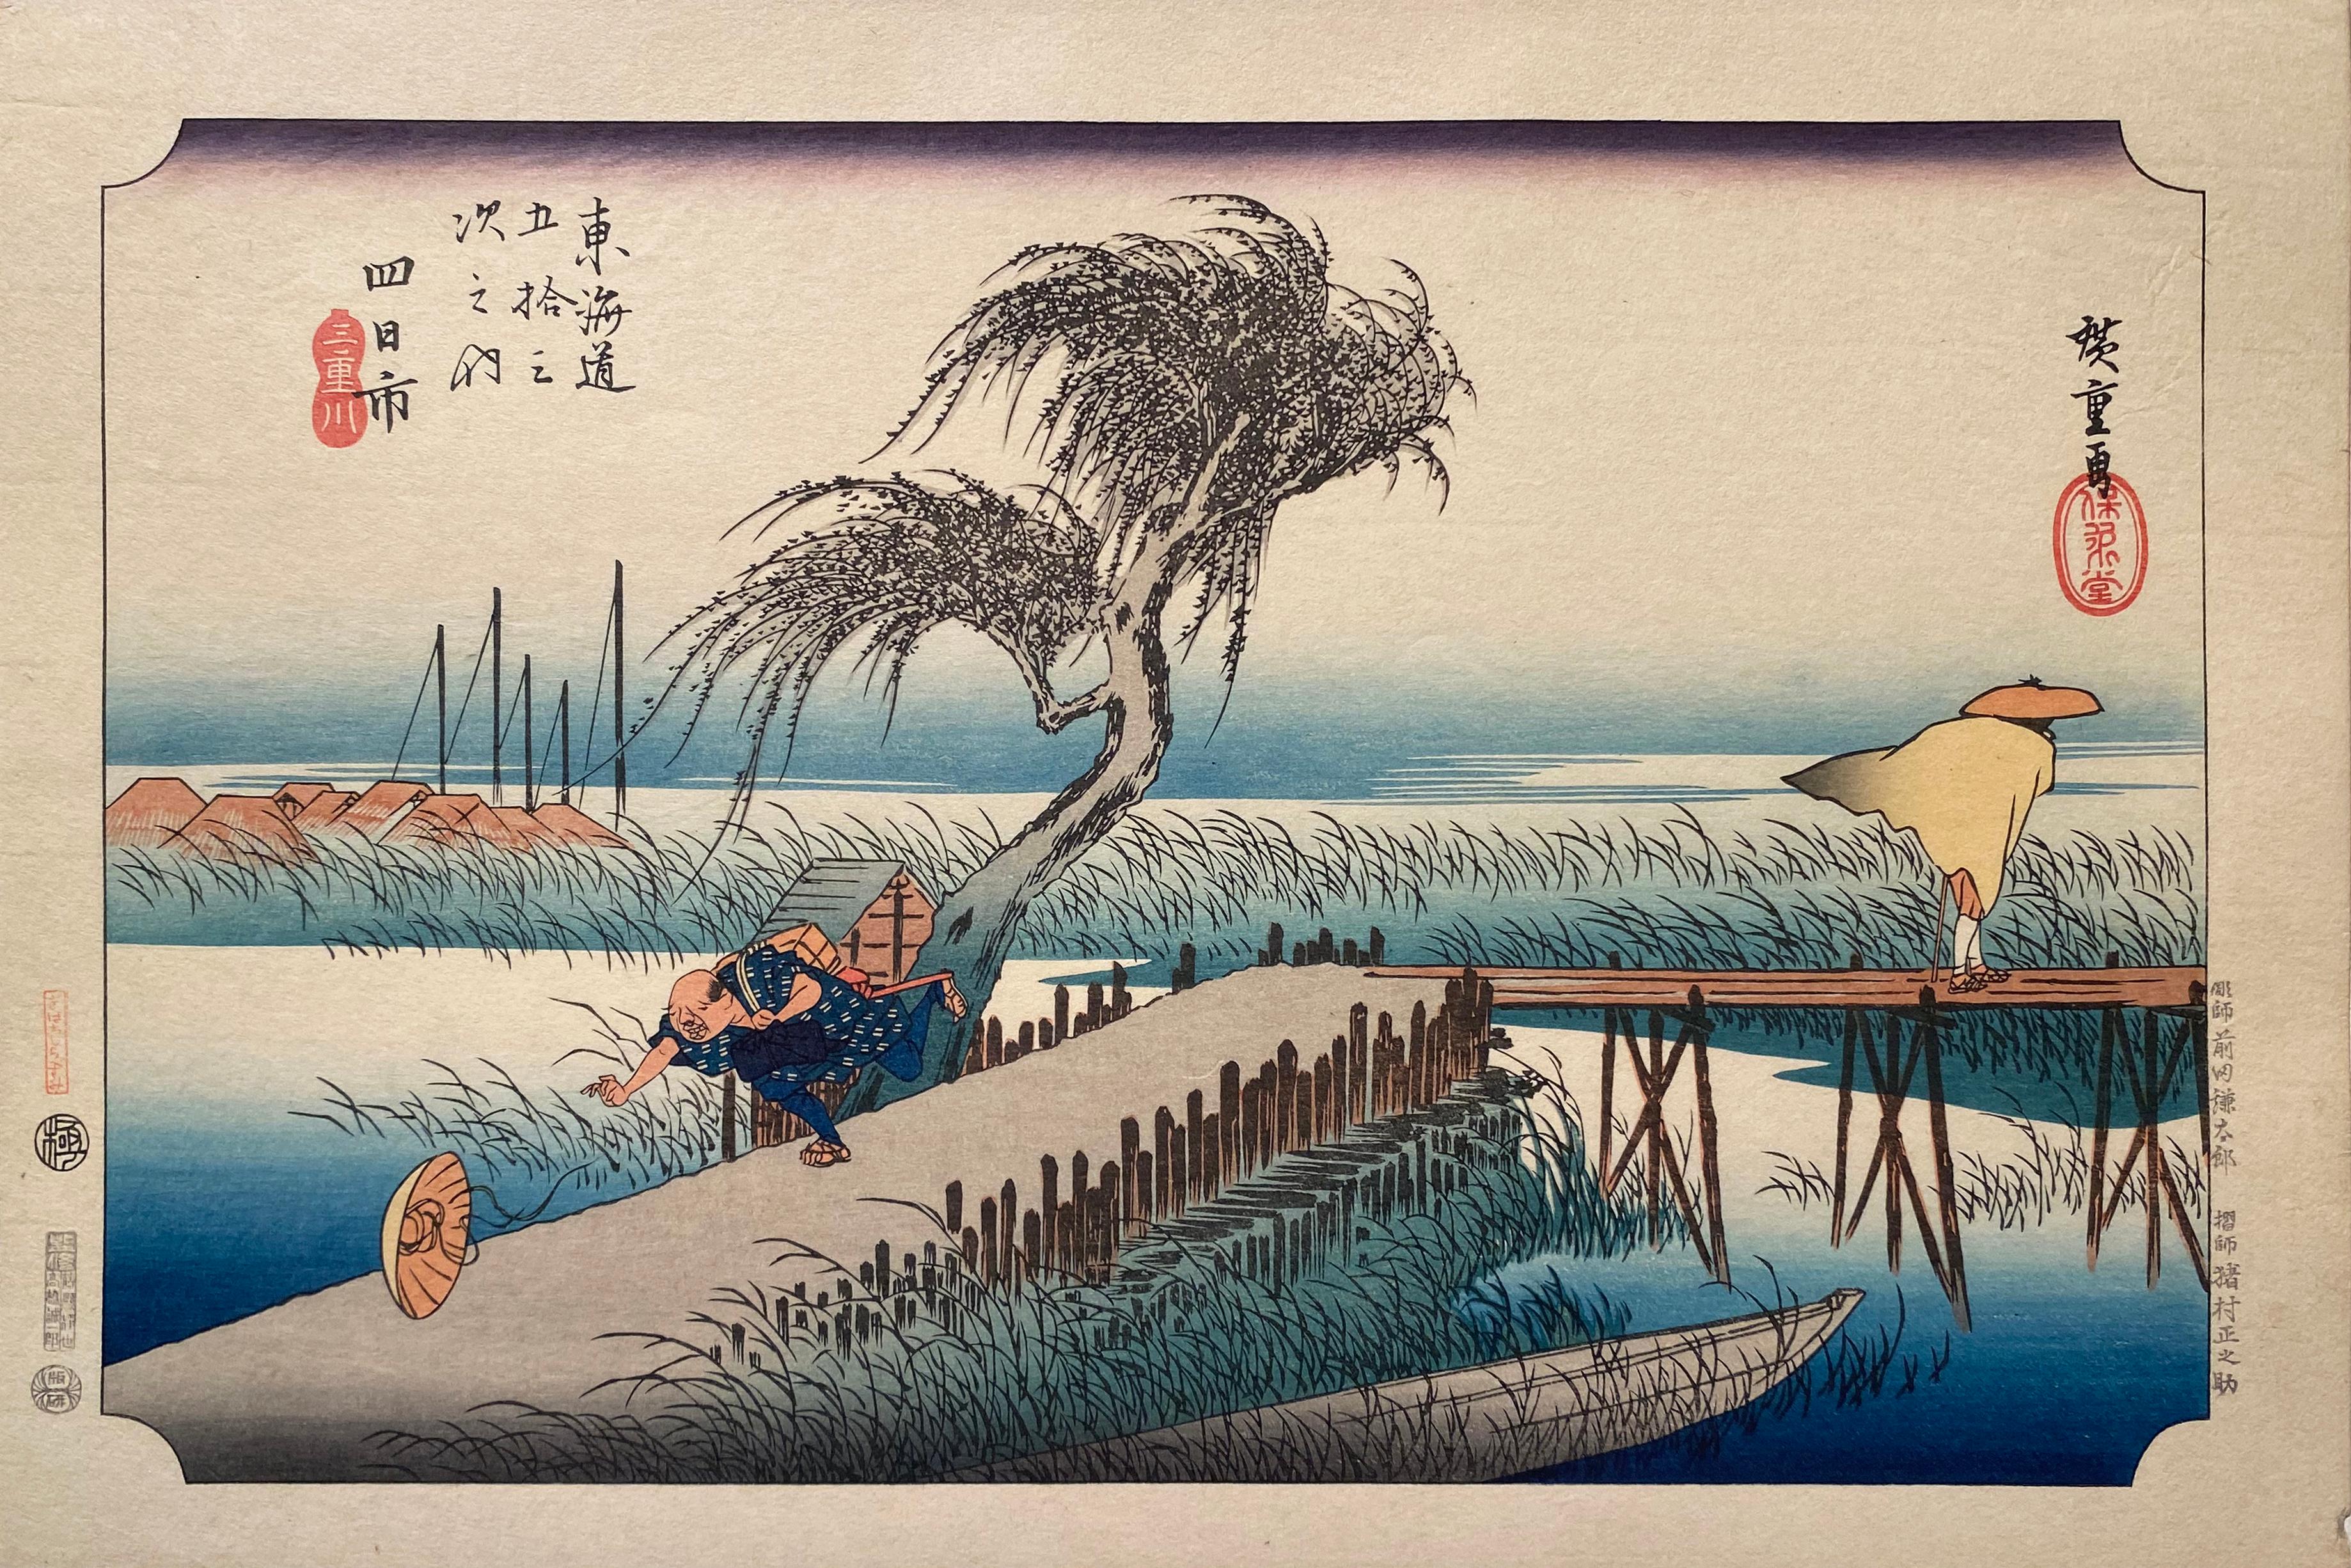 Utagawa Hiroshige (Ando Hiroshige) Landscape Print - 'Winds at Yokkaichi', After Utagawa Hiroshige 歌川廣重, Ukiyo-e Woodblock, Tokaido